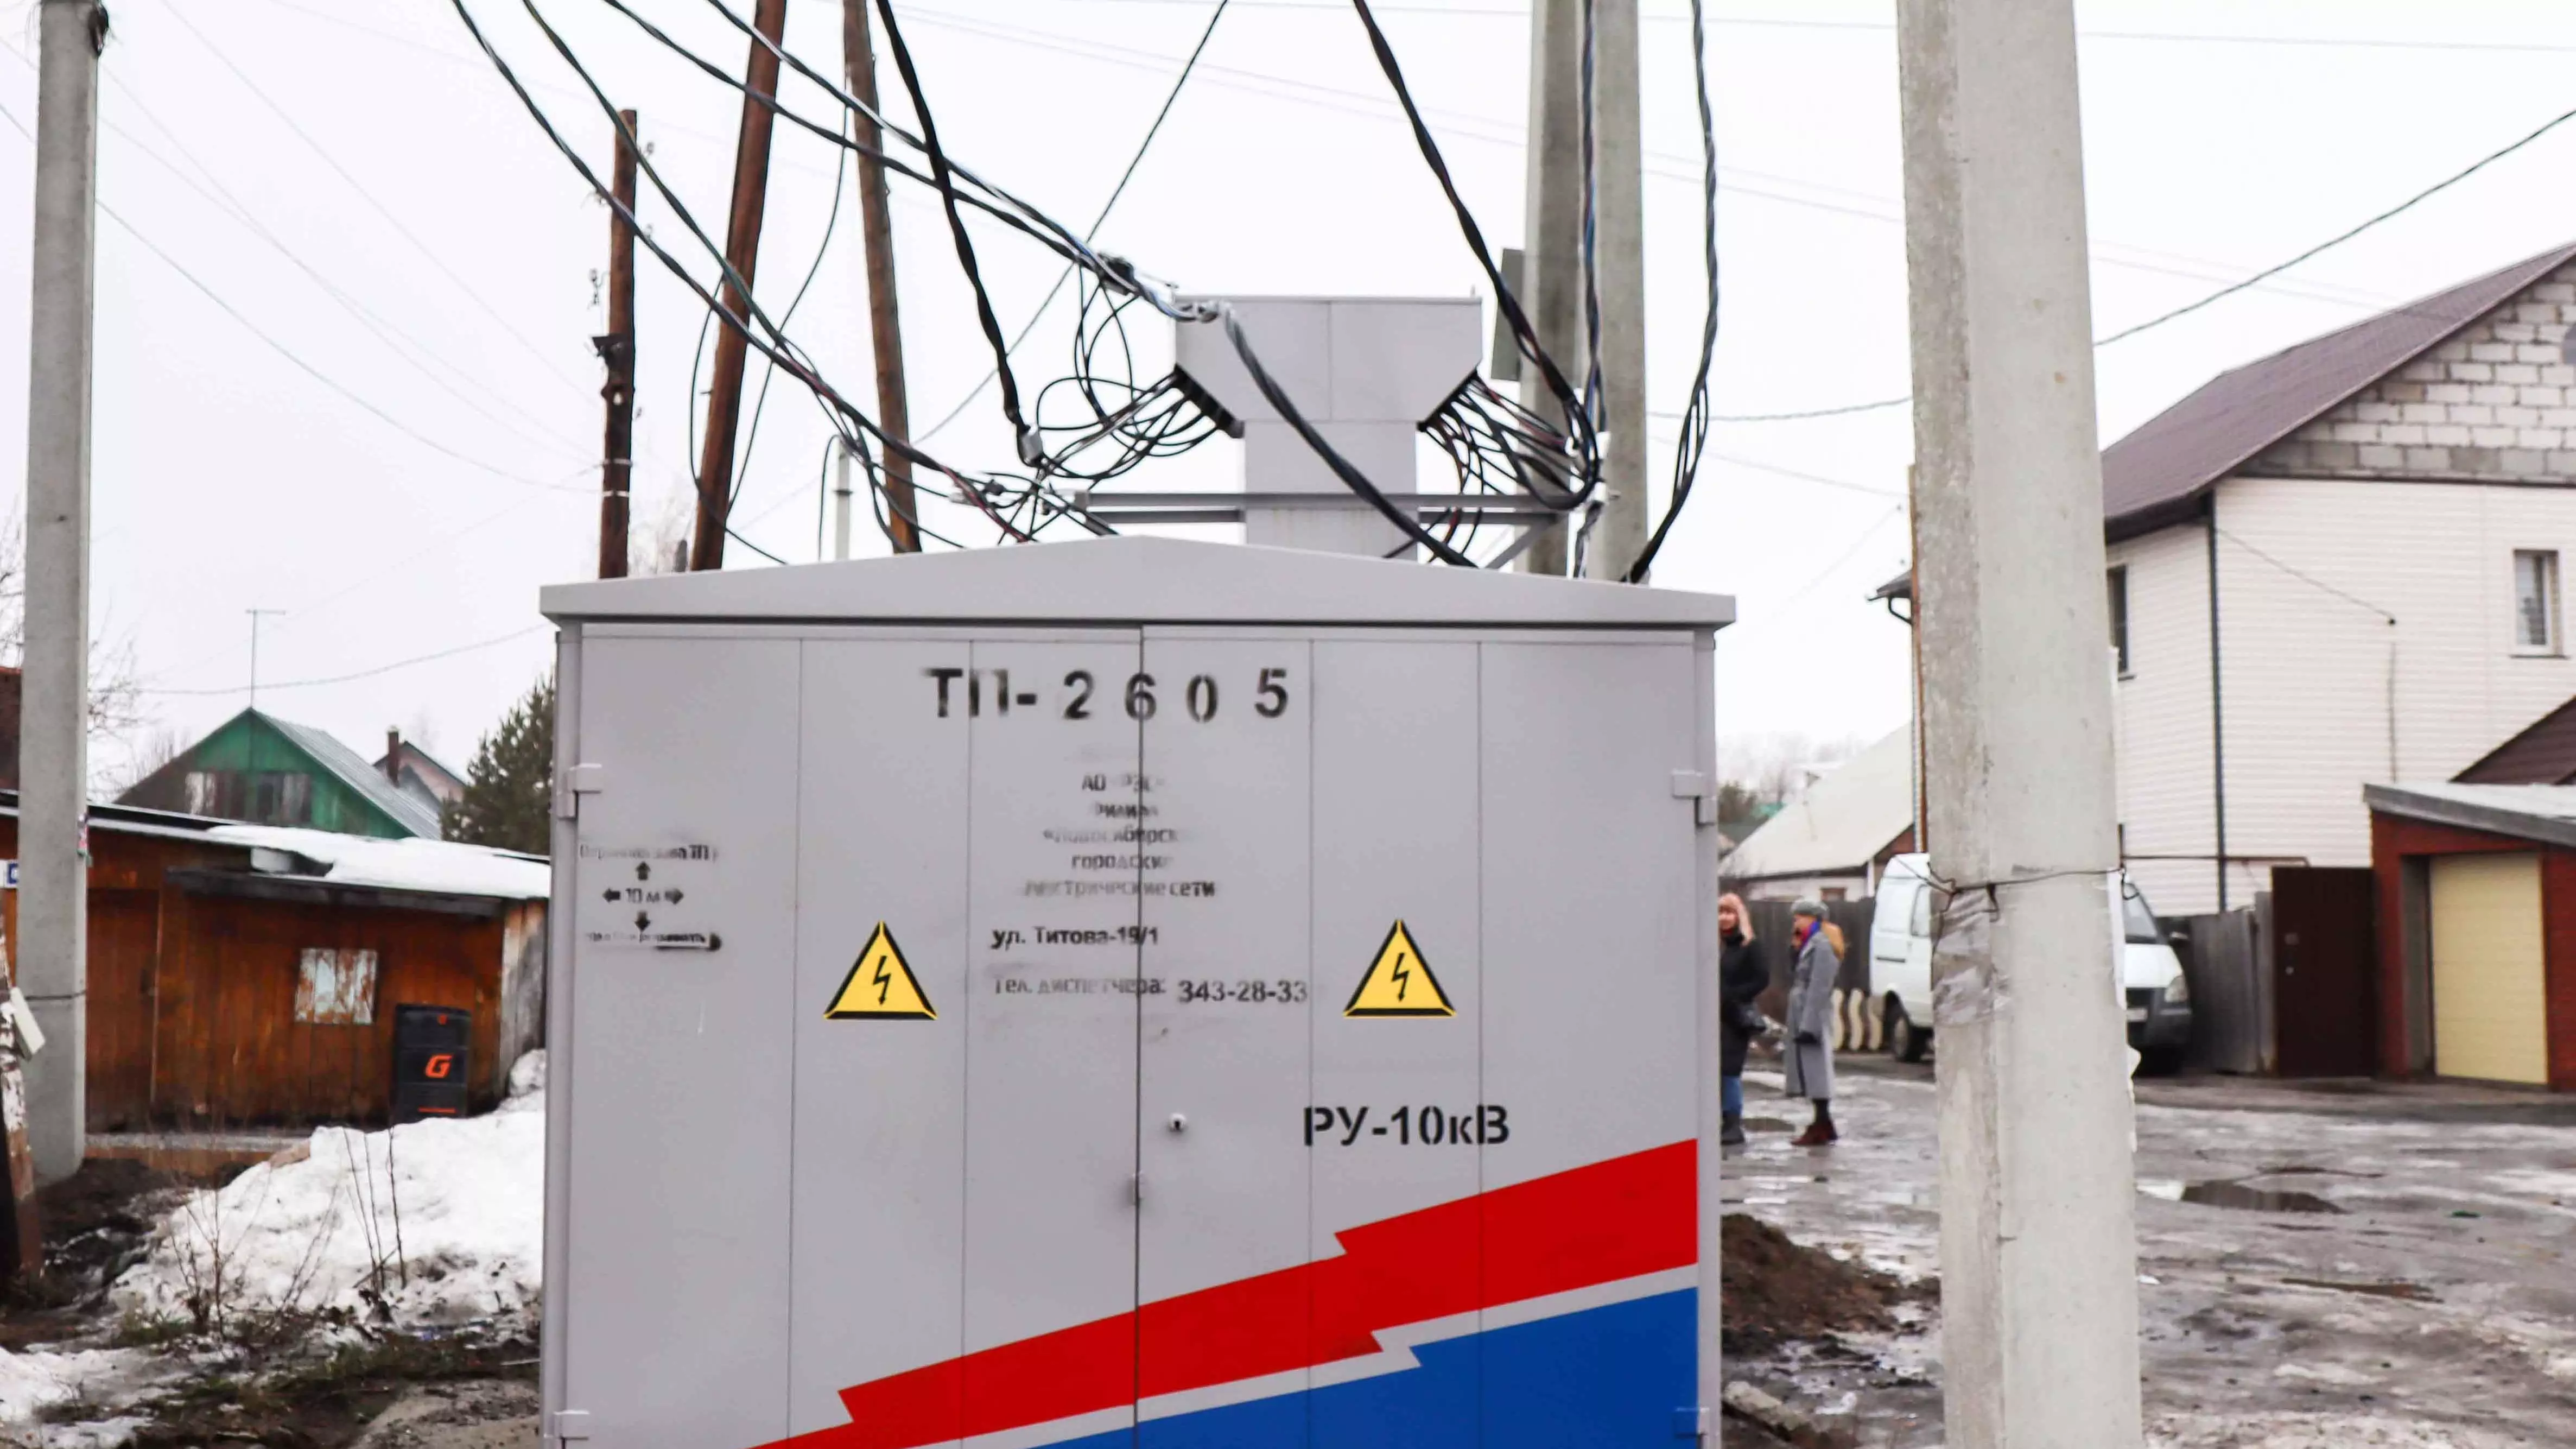 Около 26 млн рублей вложено «Россети Новосибирск»(АО «РЭС») в реконструкцию электросетей поселка Плановый